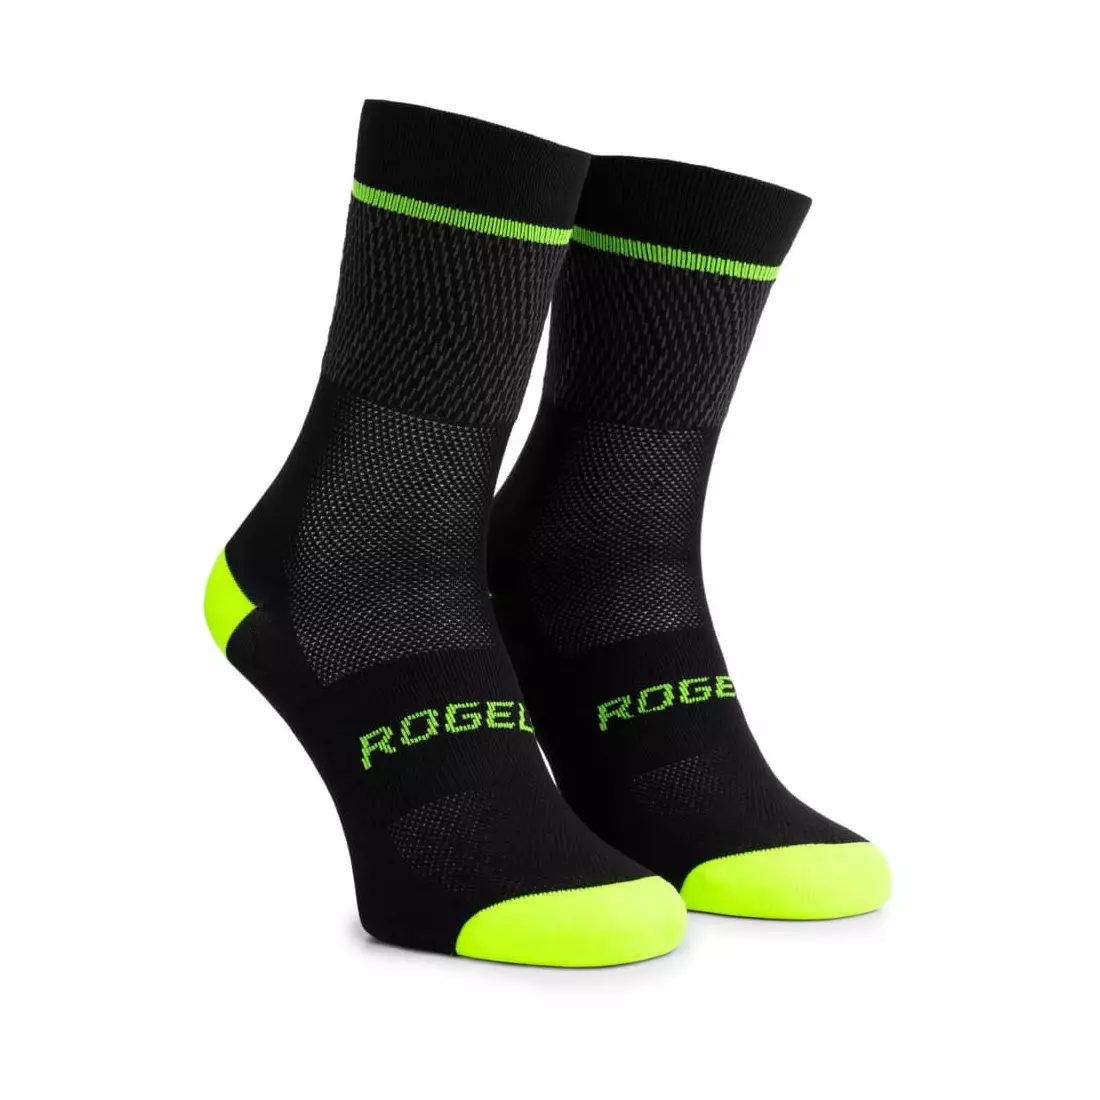 Rogelli HERO II kerékpáros/sport zokni, fekete-fluor